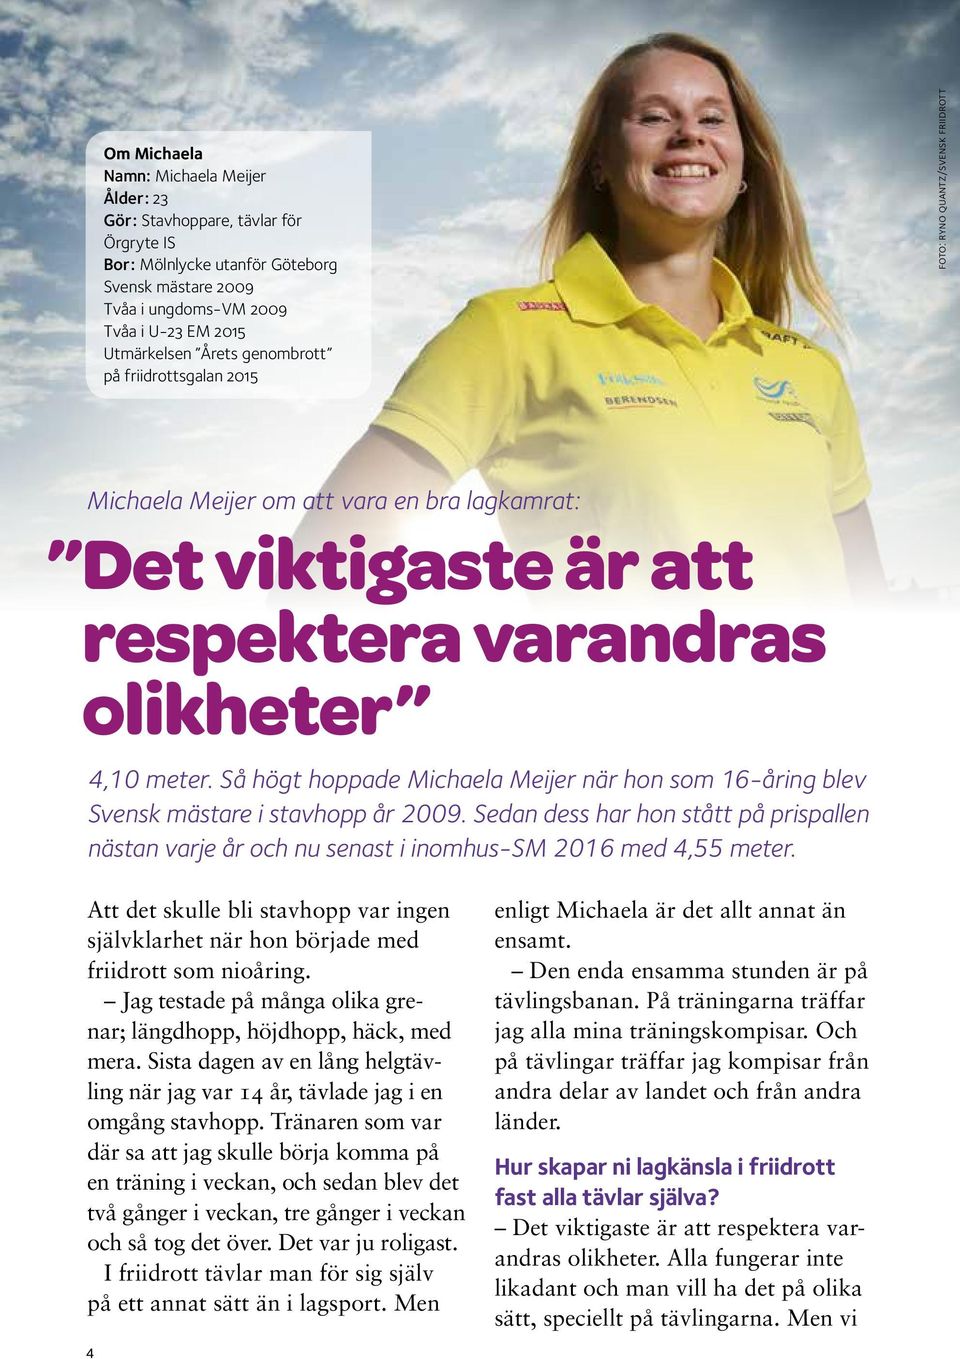 Så högt hoppade Michaela Meijer när hon som 16-åring blev Svensk mästare i stavhopp år 2009. Sedan dess har hon stått på prispallen nästan varje år och nu senast i inomhus-sm 2016 med 4,55 meter.